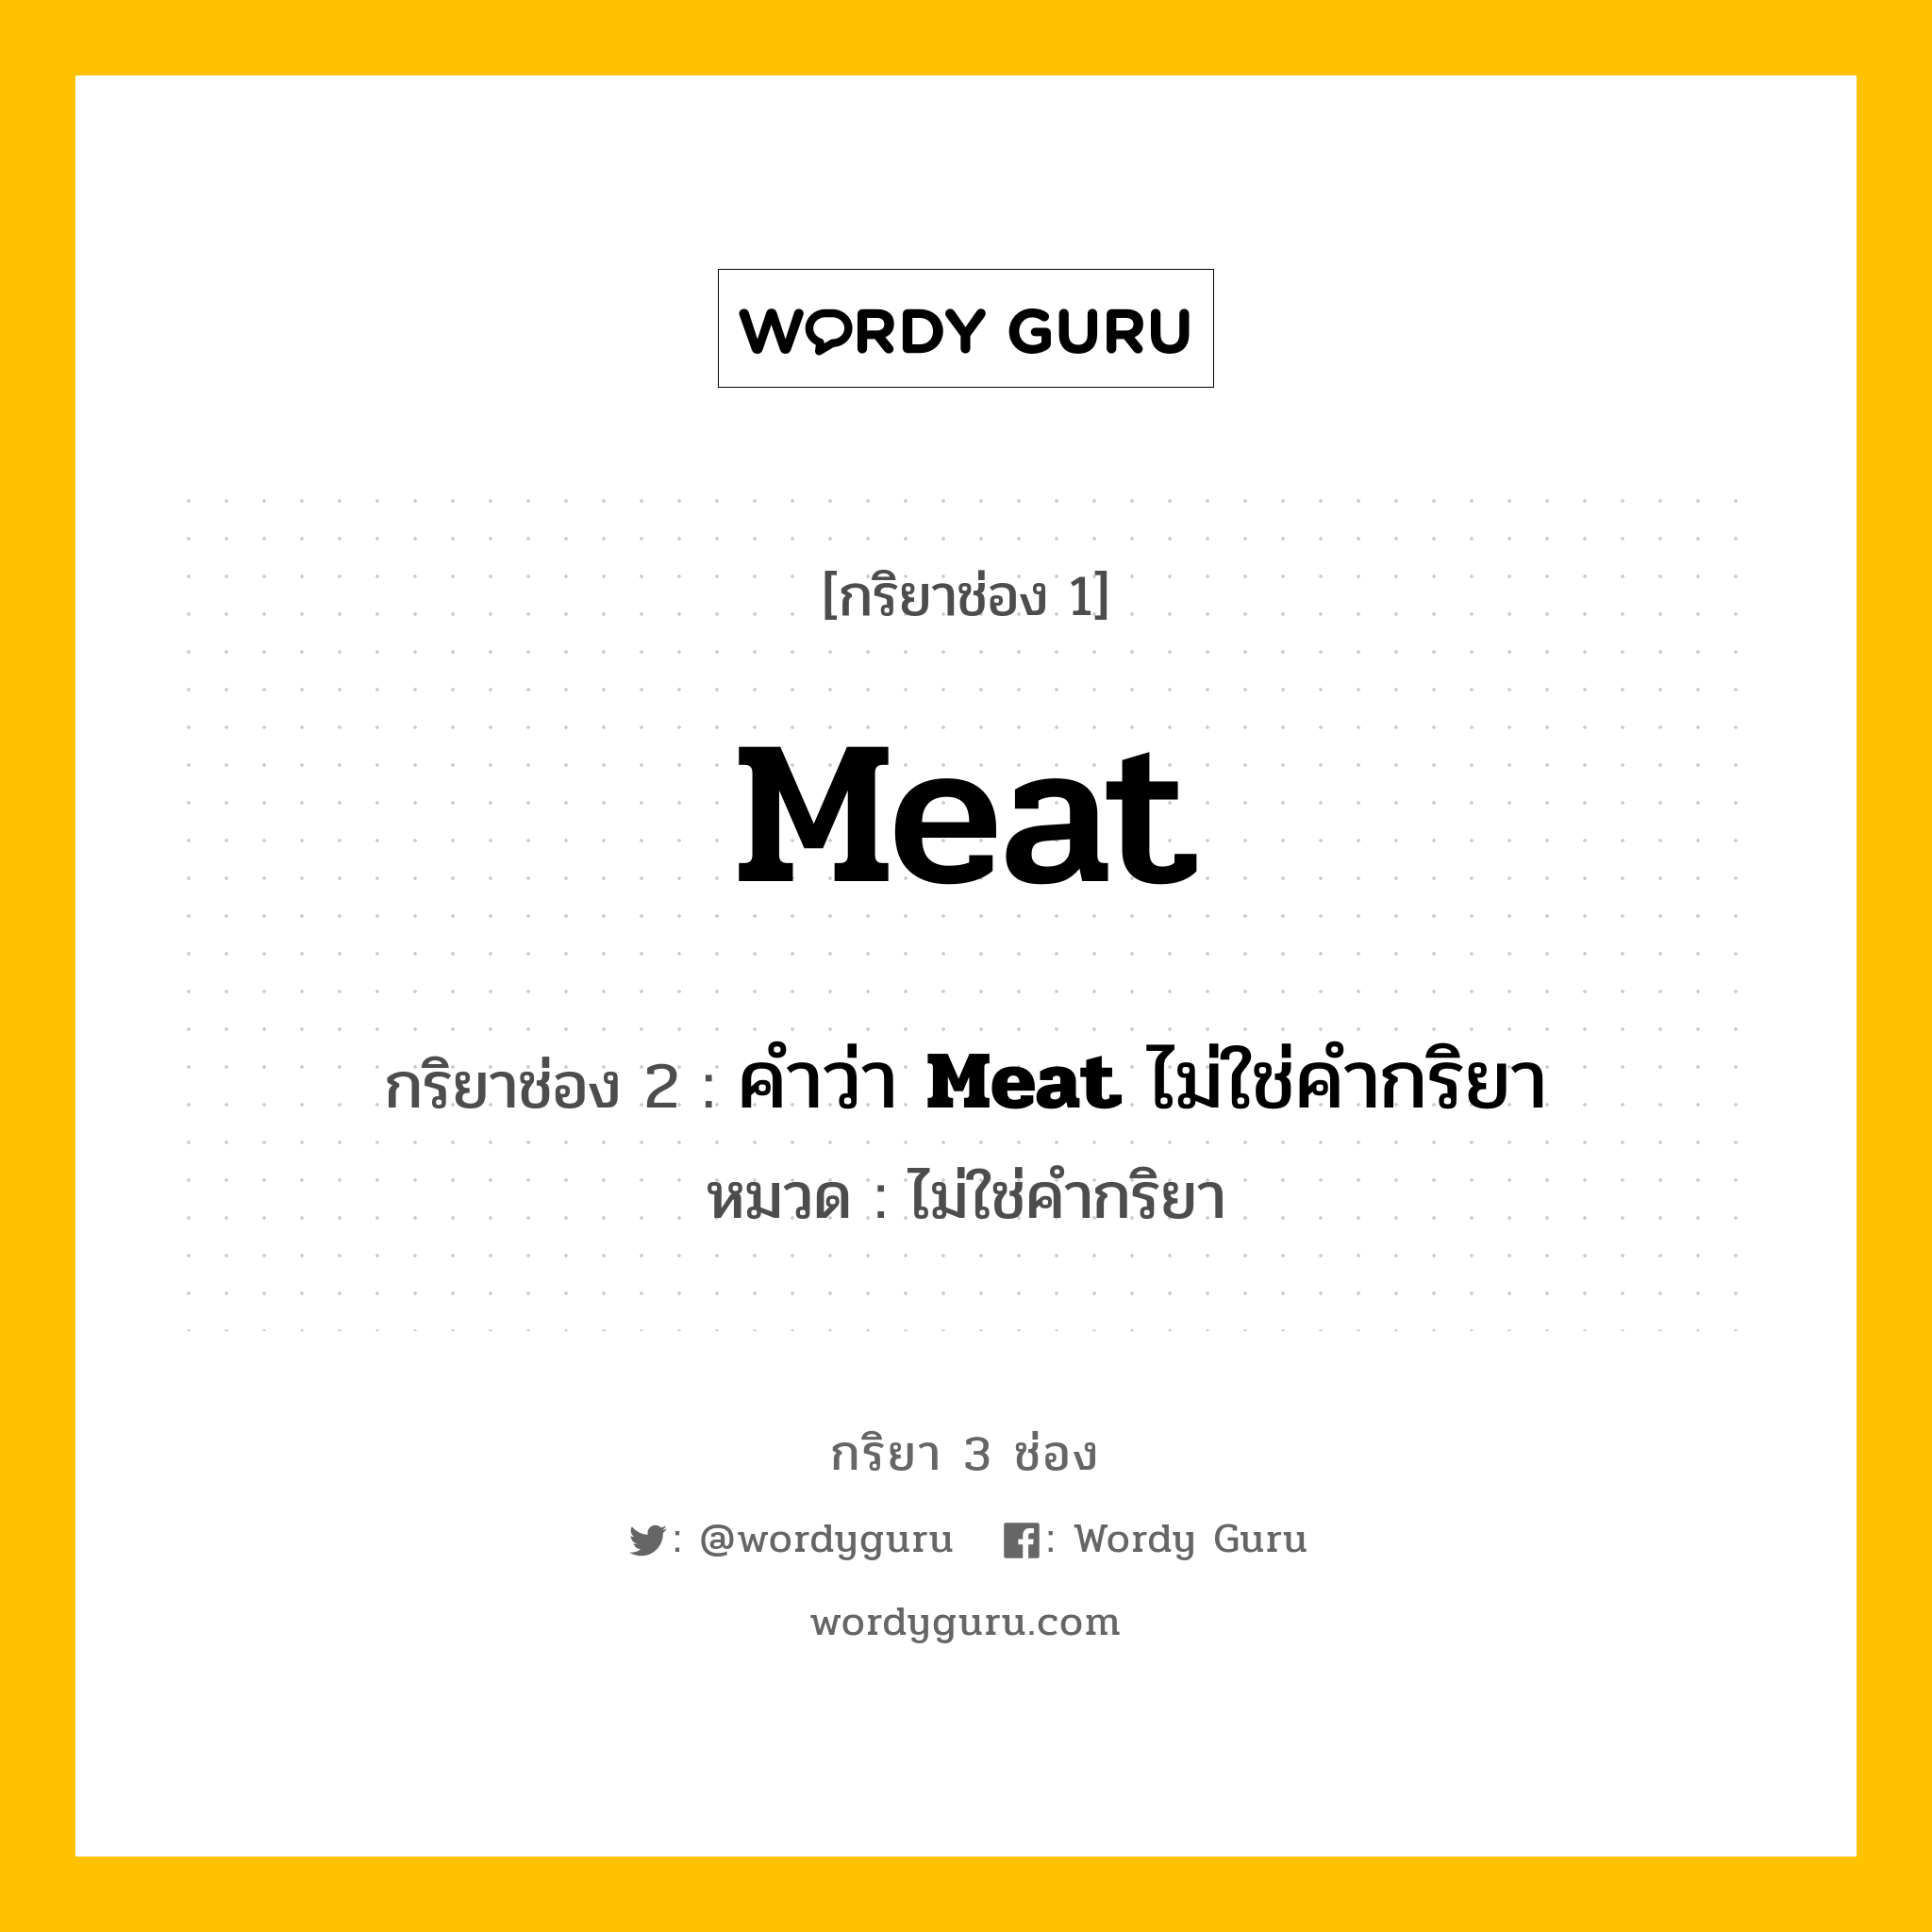 กริยา 3 ช่อง: Meat ช่อง 2 Meat ช่อง 3 คืออะไร, กริยาช่อง 1 Meat กริยาช่อง 2 คำว่า <b>Meat</b> ไม่ใช่คำกริยา หมวด ไม่ใช่คำกริยา หมวด ไม่ใช่คำกริยา